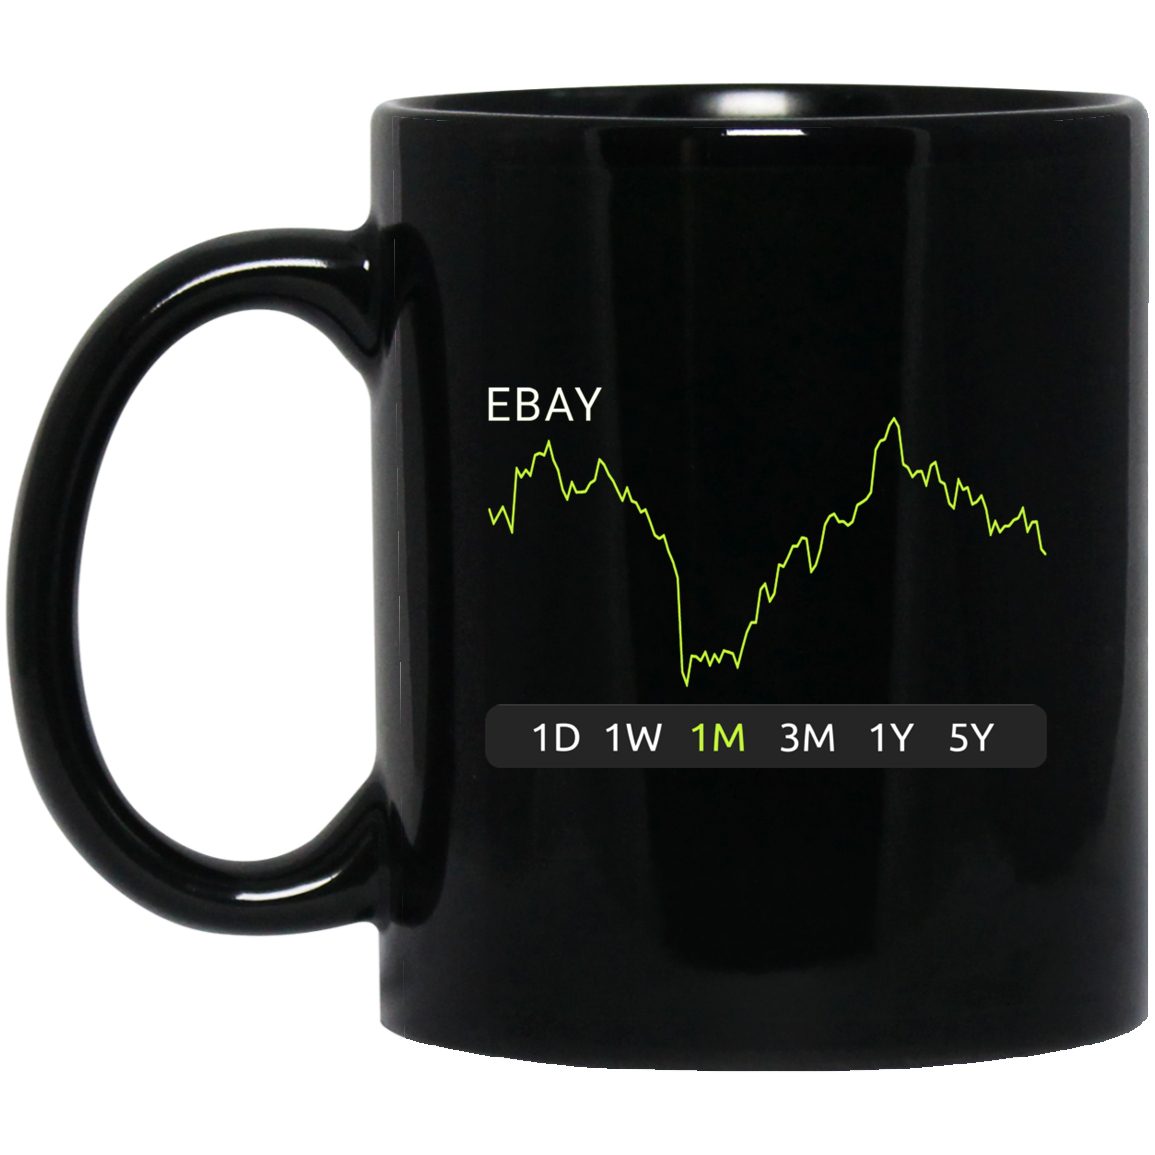 EBAY Stock 1m Mug